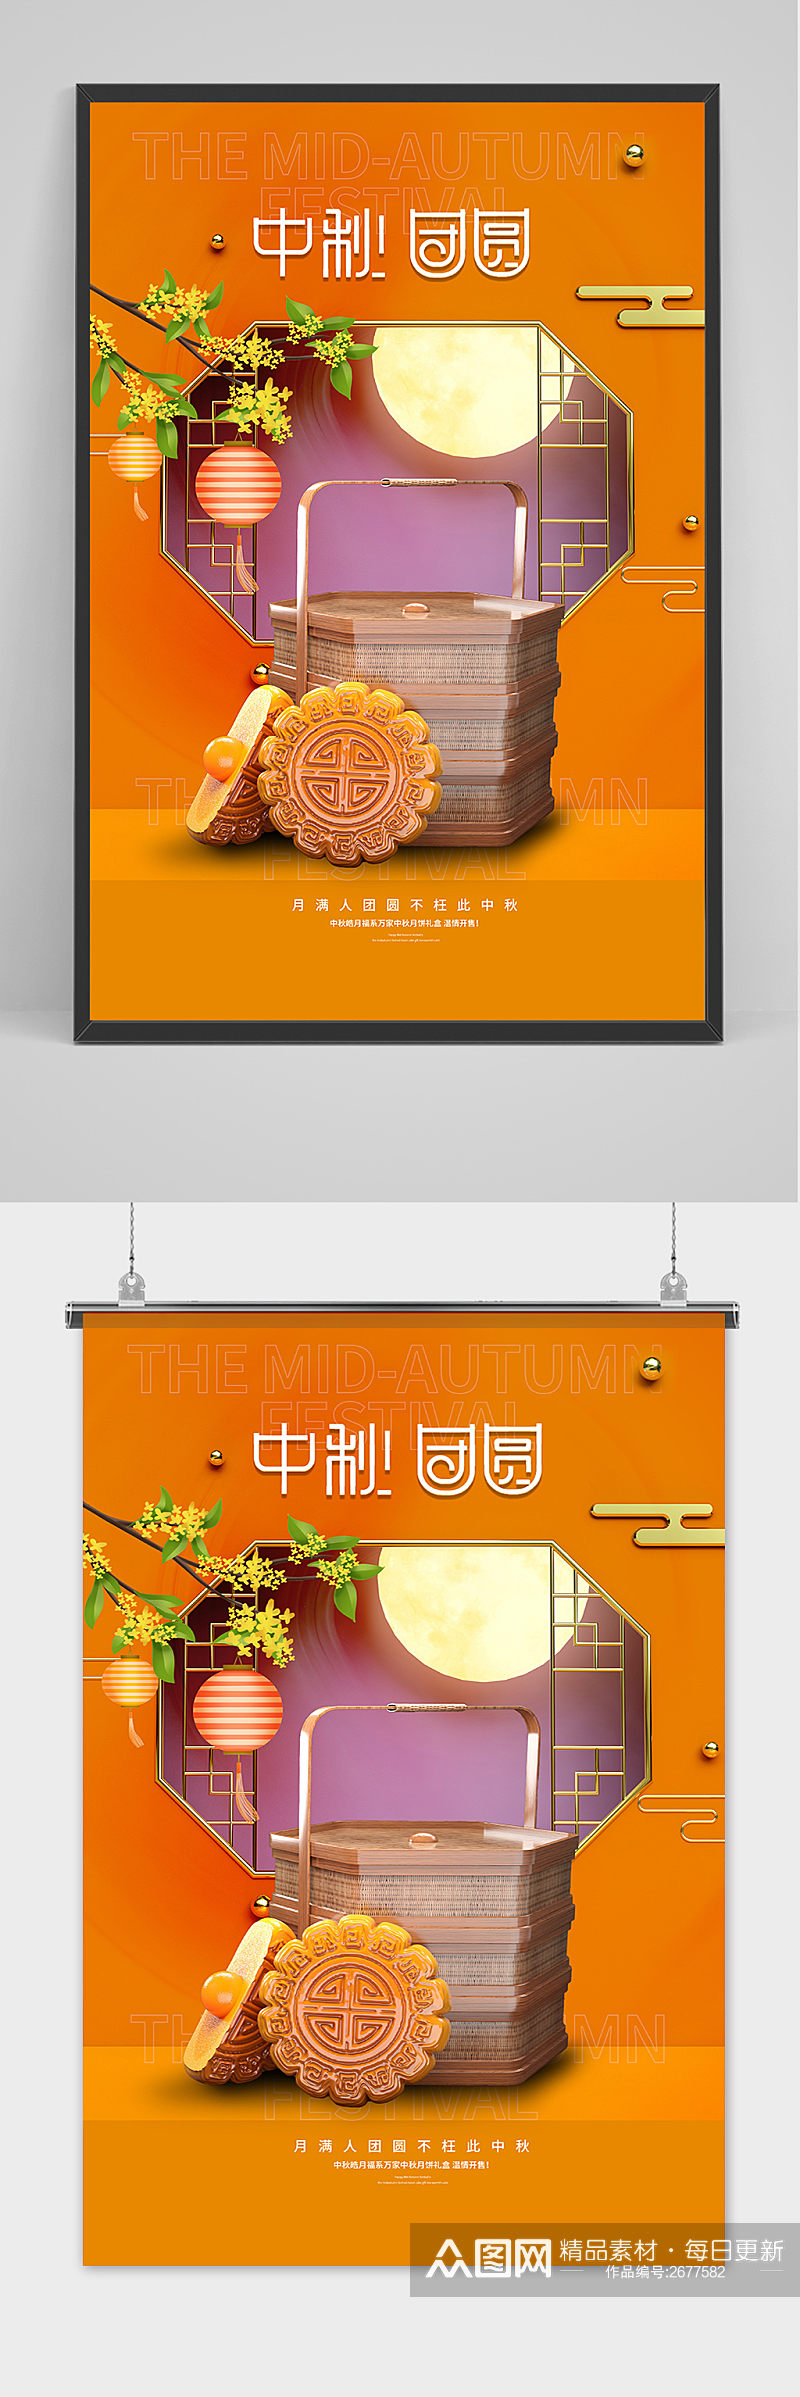 创意传统中国风中秋节电商促销海报素材